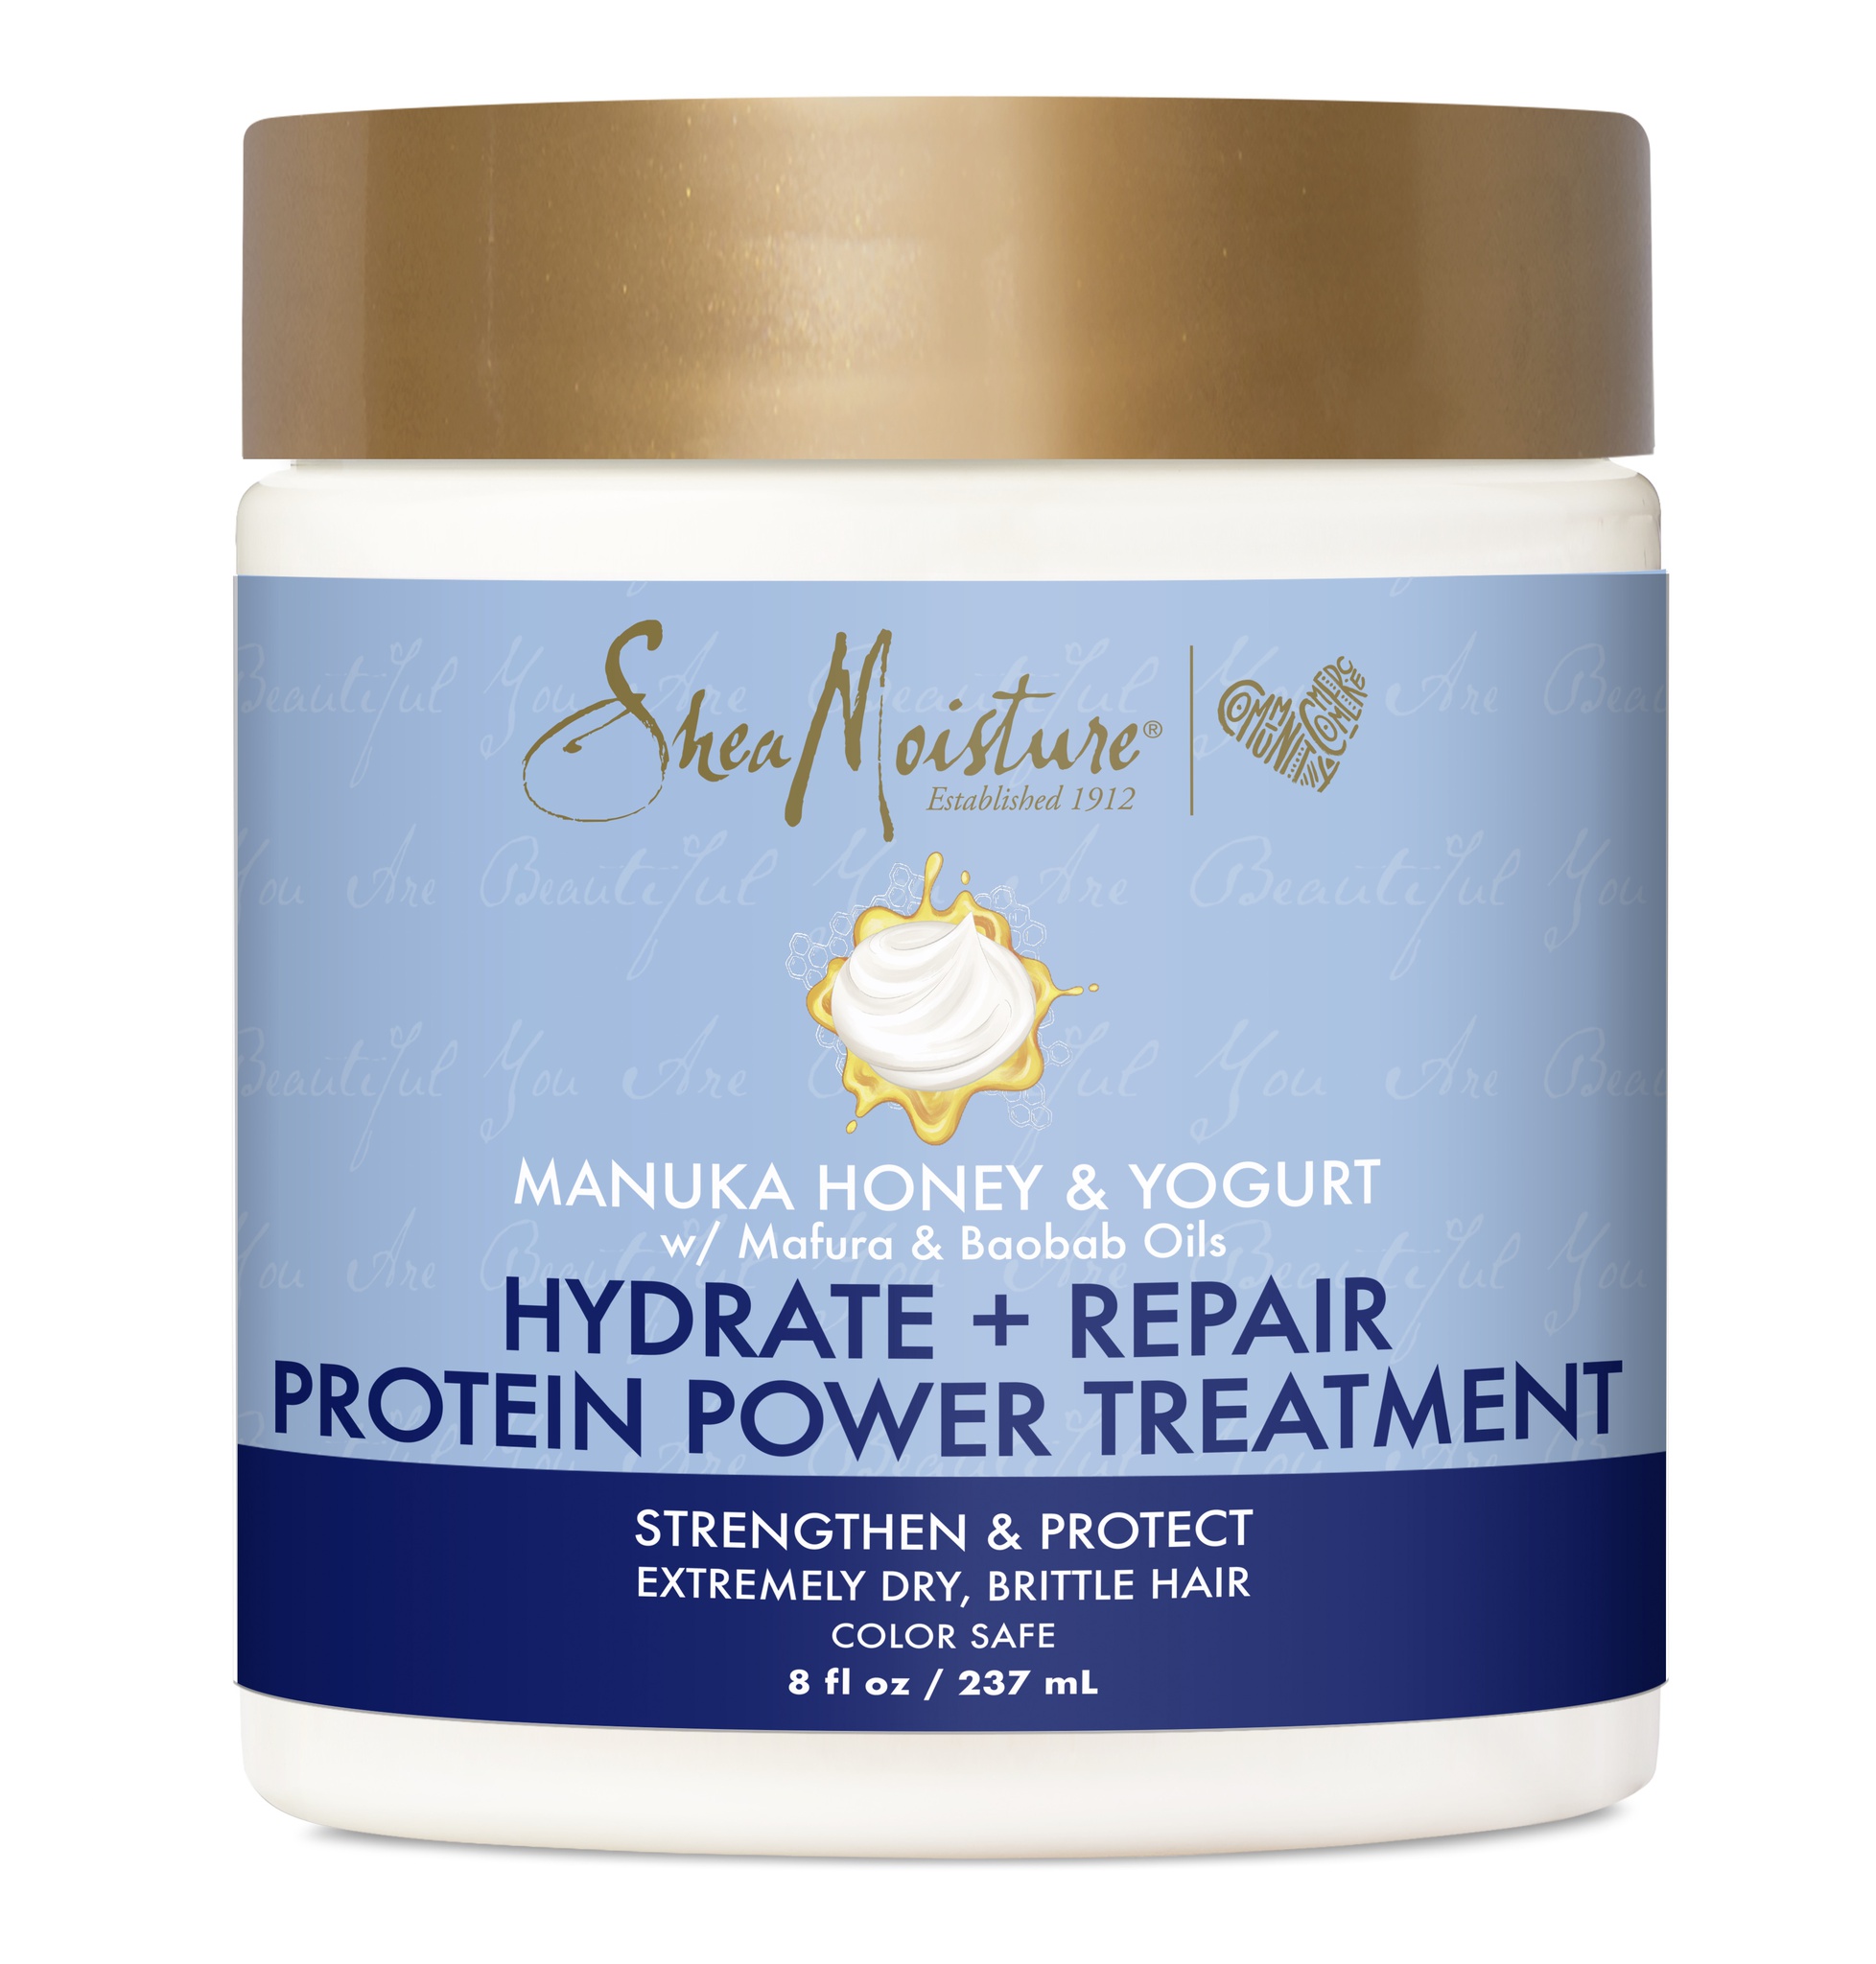 SheaMoisture Manuka Honey & Yogurt Hydrate + Repair Protein Power